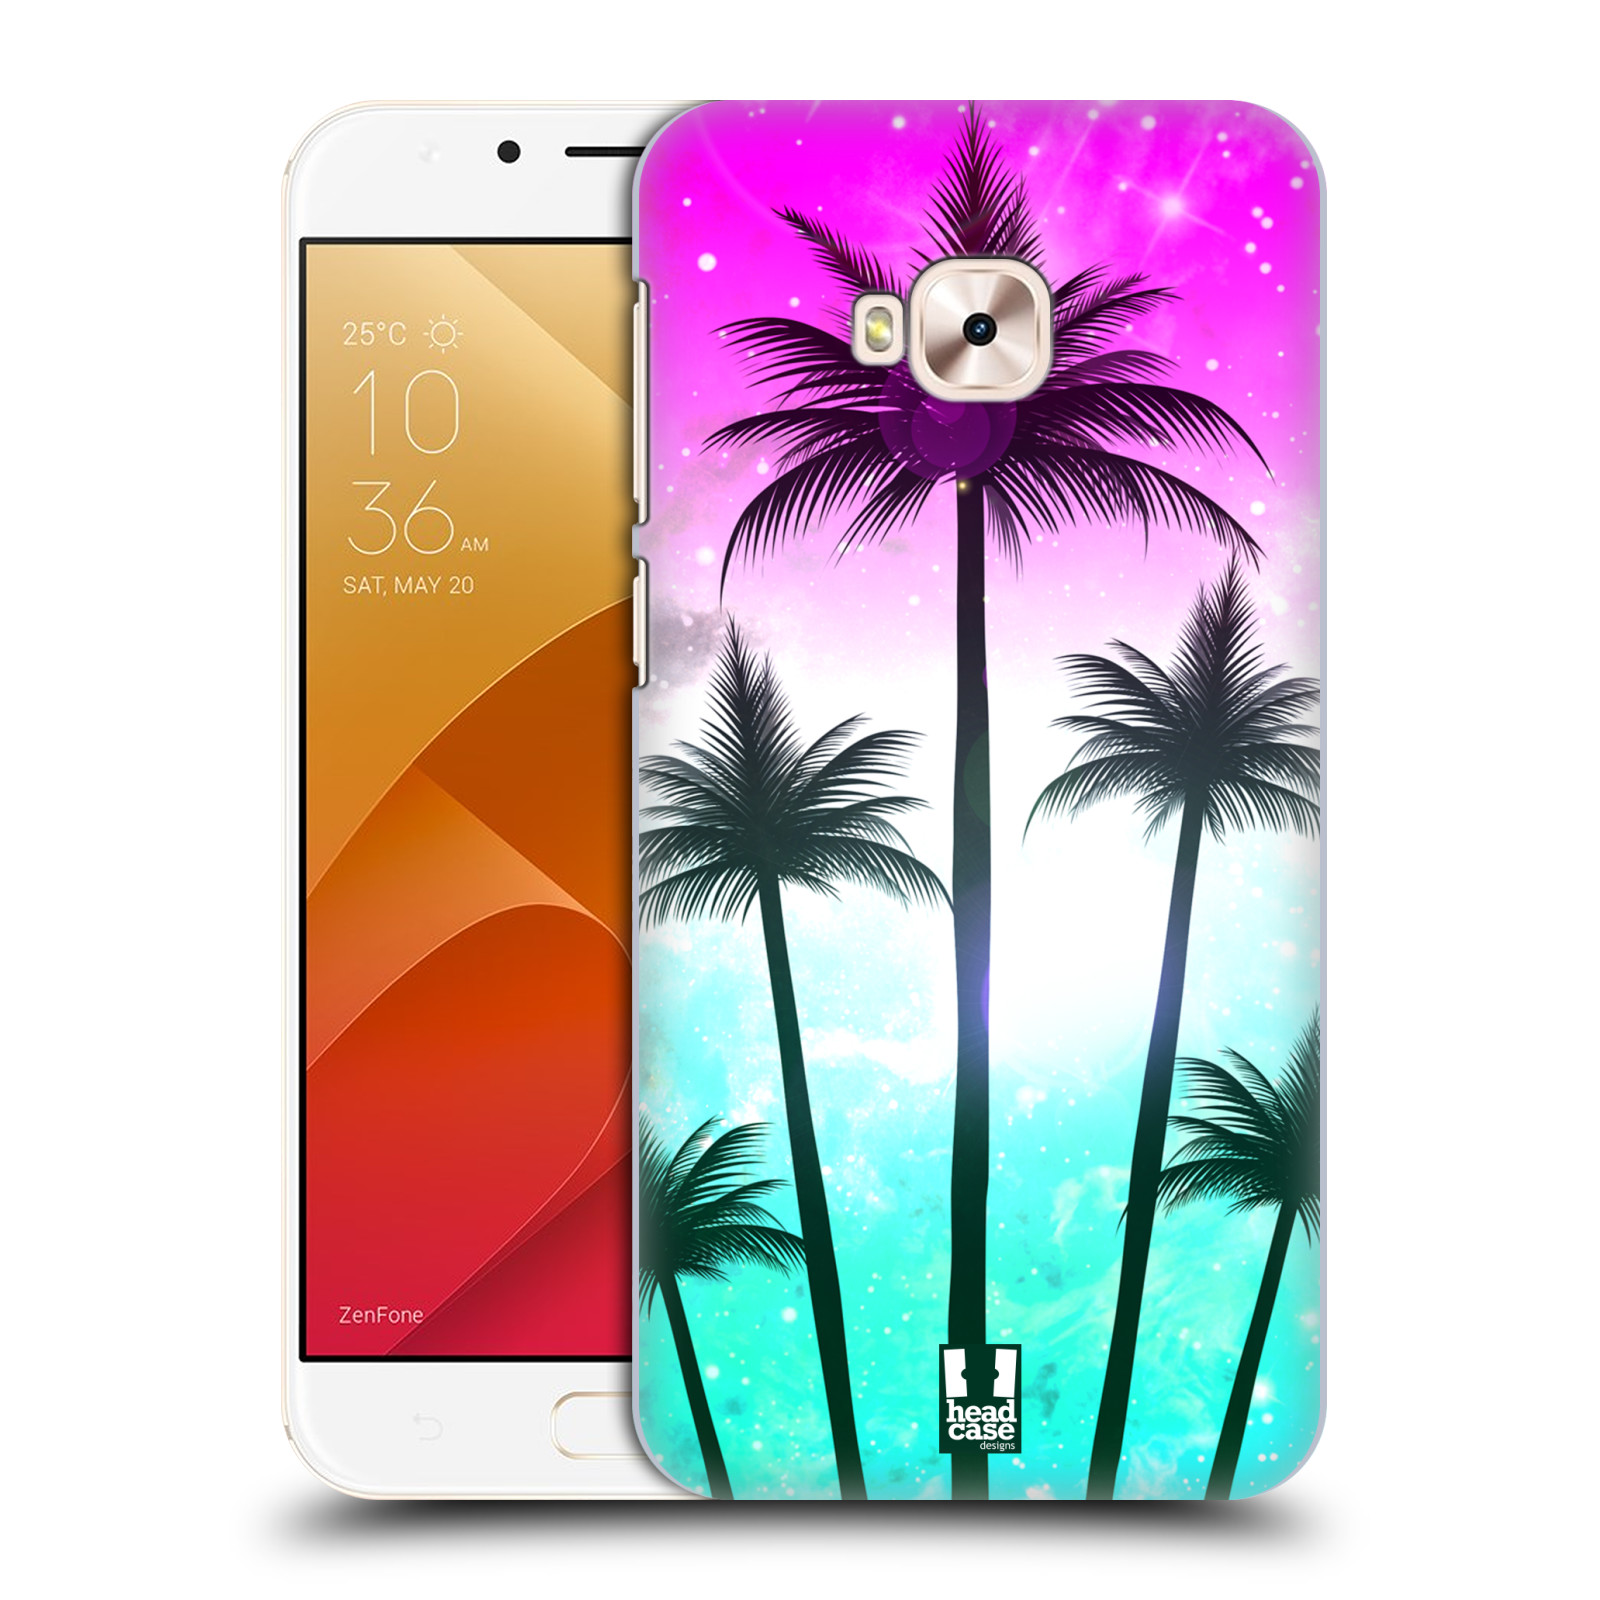 HEAD CASE plastový obal na mobil Asus Zenfone 4 Selfie Pro ZD552KL vzor Kreslený motiv silueta moře a palmy RŮŽOVÁ A TYRKYS